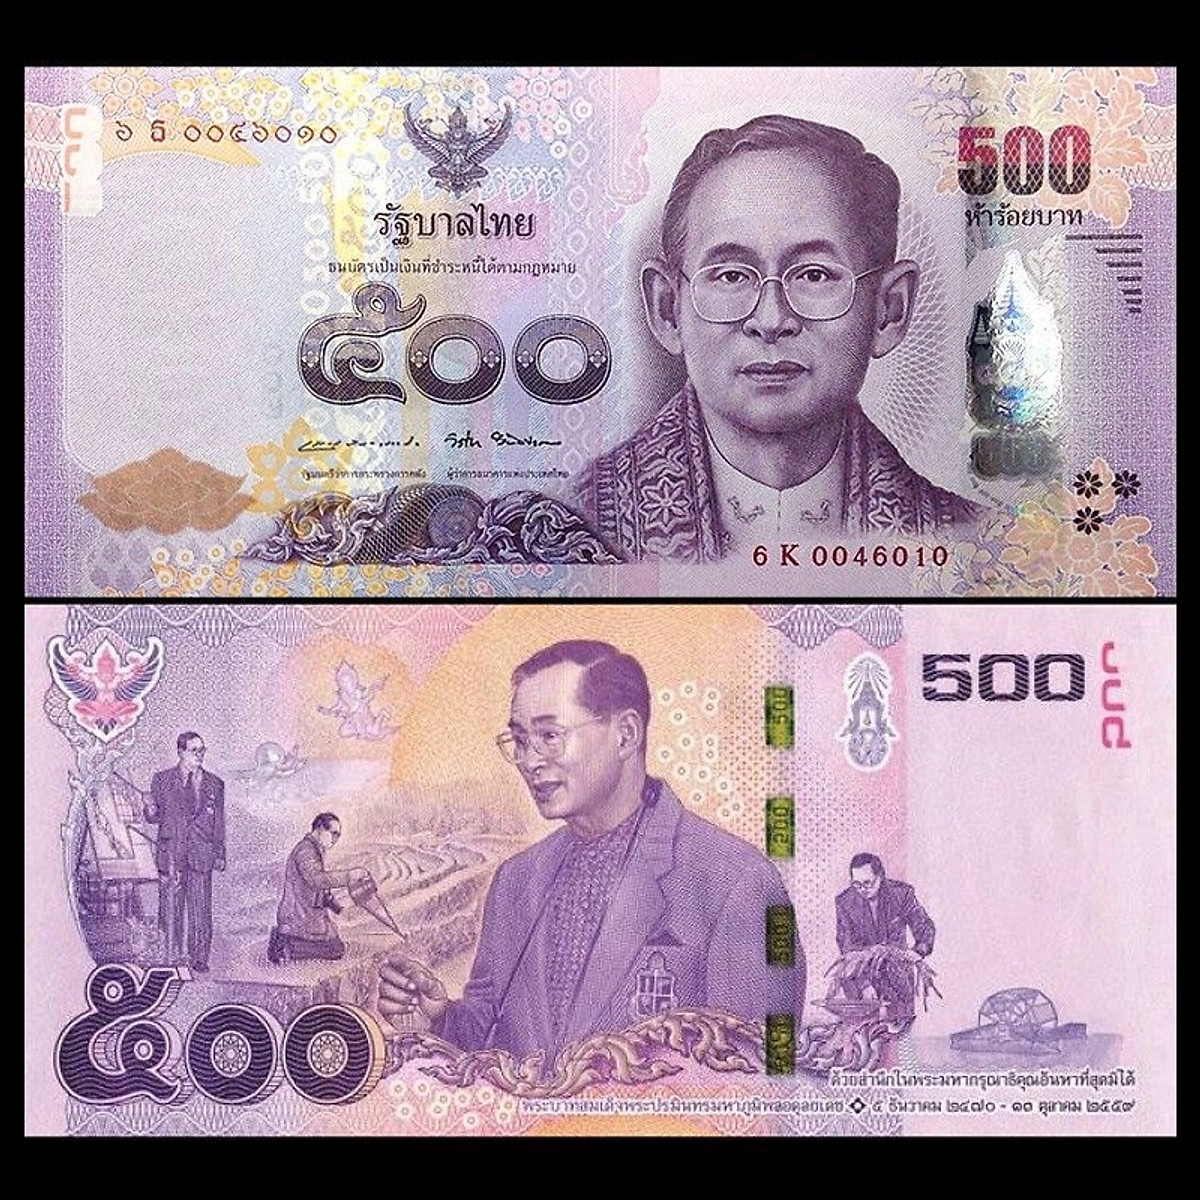 500 baht Thái Lan: Với hình ảnh chi tiết và rực rỡ về những chiếc tiền 500 baht Thái Lan, bạn sẽ có cơ hội ngắm nhìn những chi tiết tinh tế và đẹp mắt của chúng. Hãy xem ngay để tìm hiểu thêm về những nét độc đáo của tiền Thái Lan.